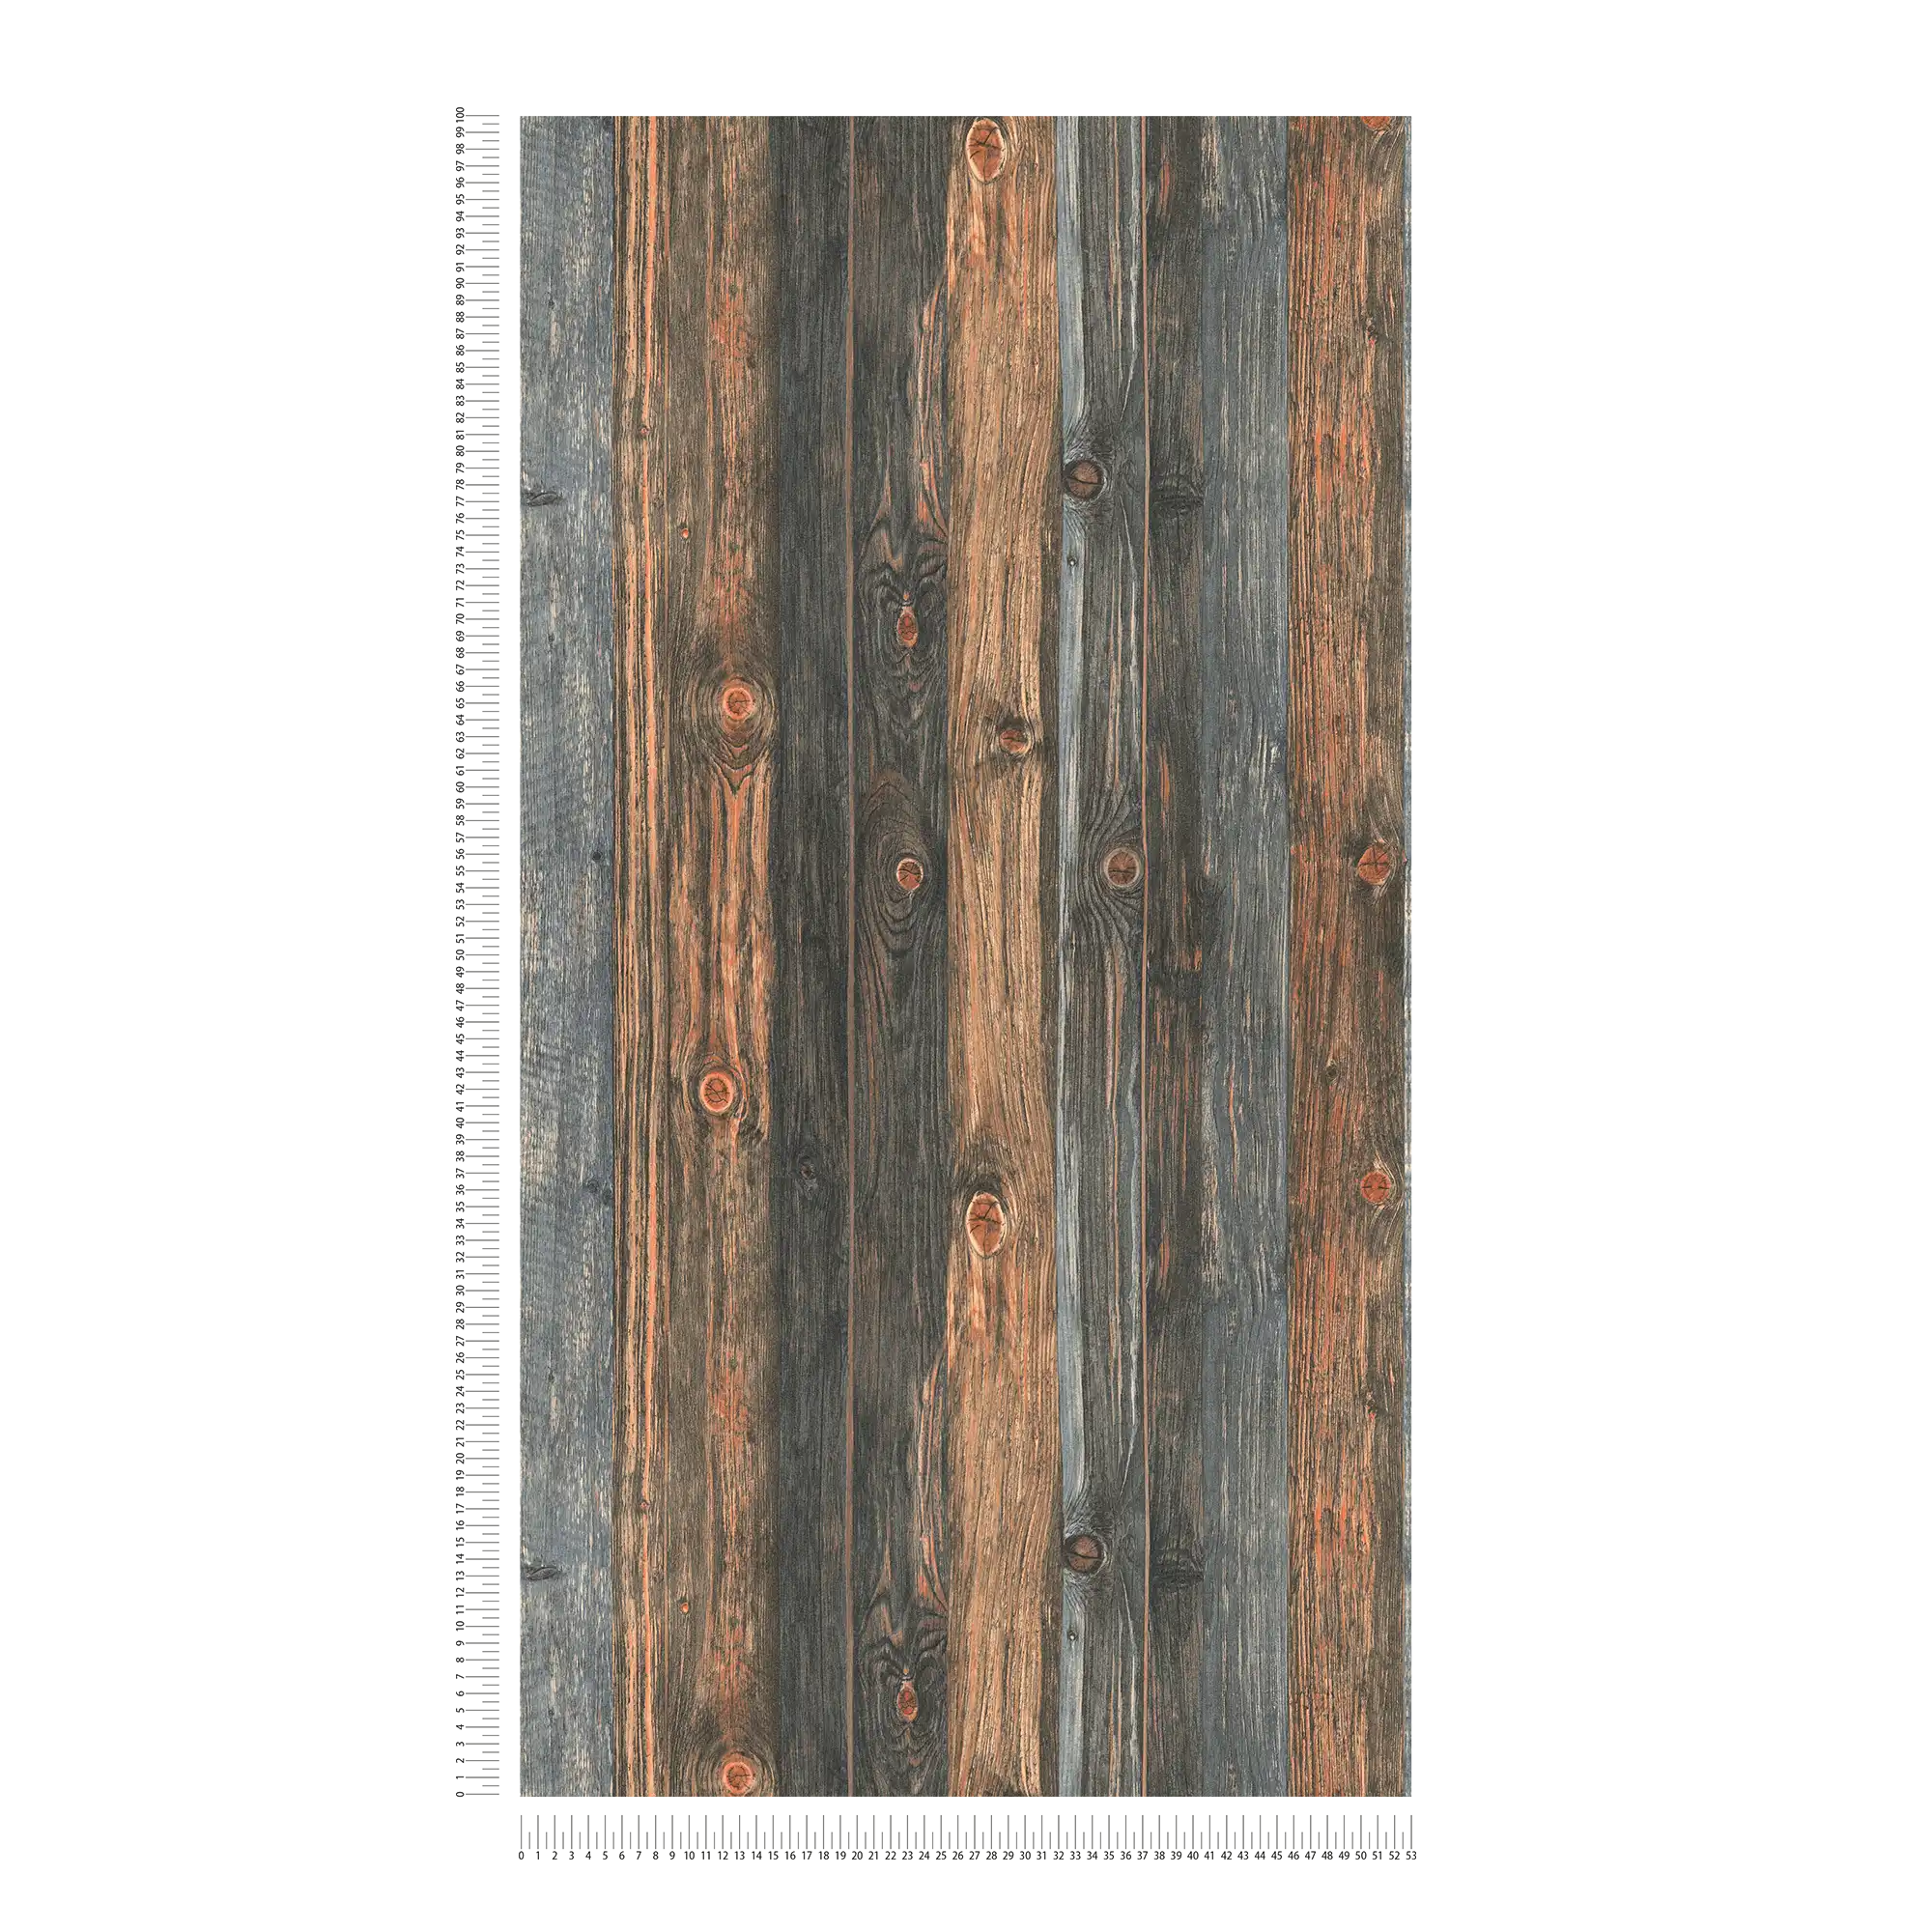             Carta da parati in legno con motivo di tavole, struttura e venature del legno - marrone, grigio, beige
        